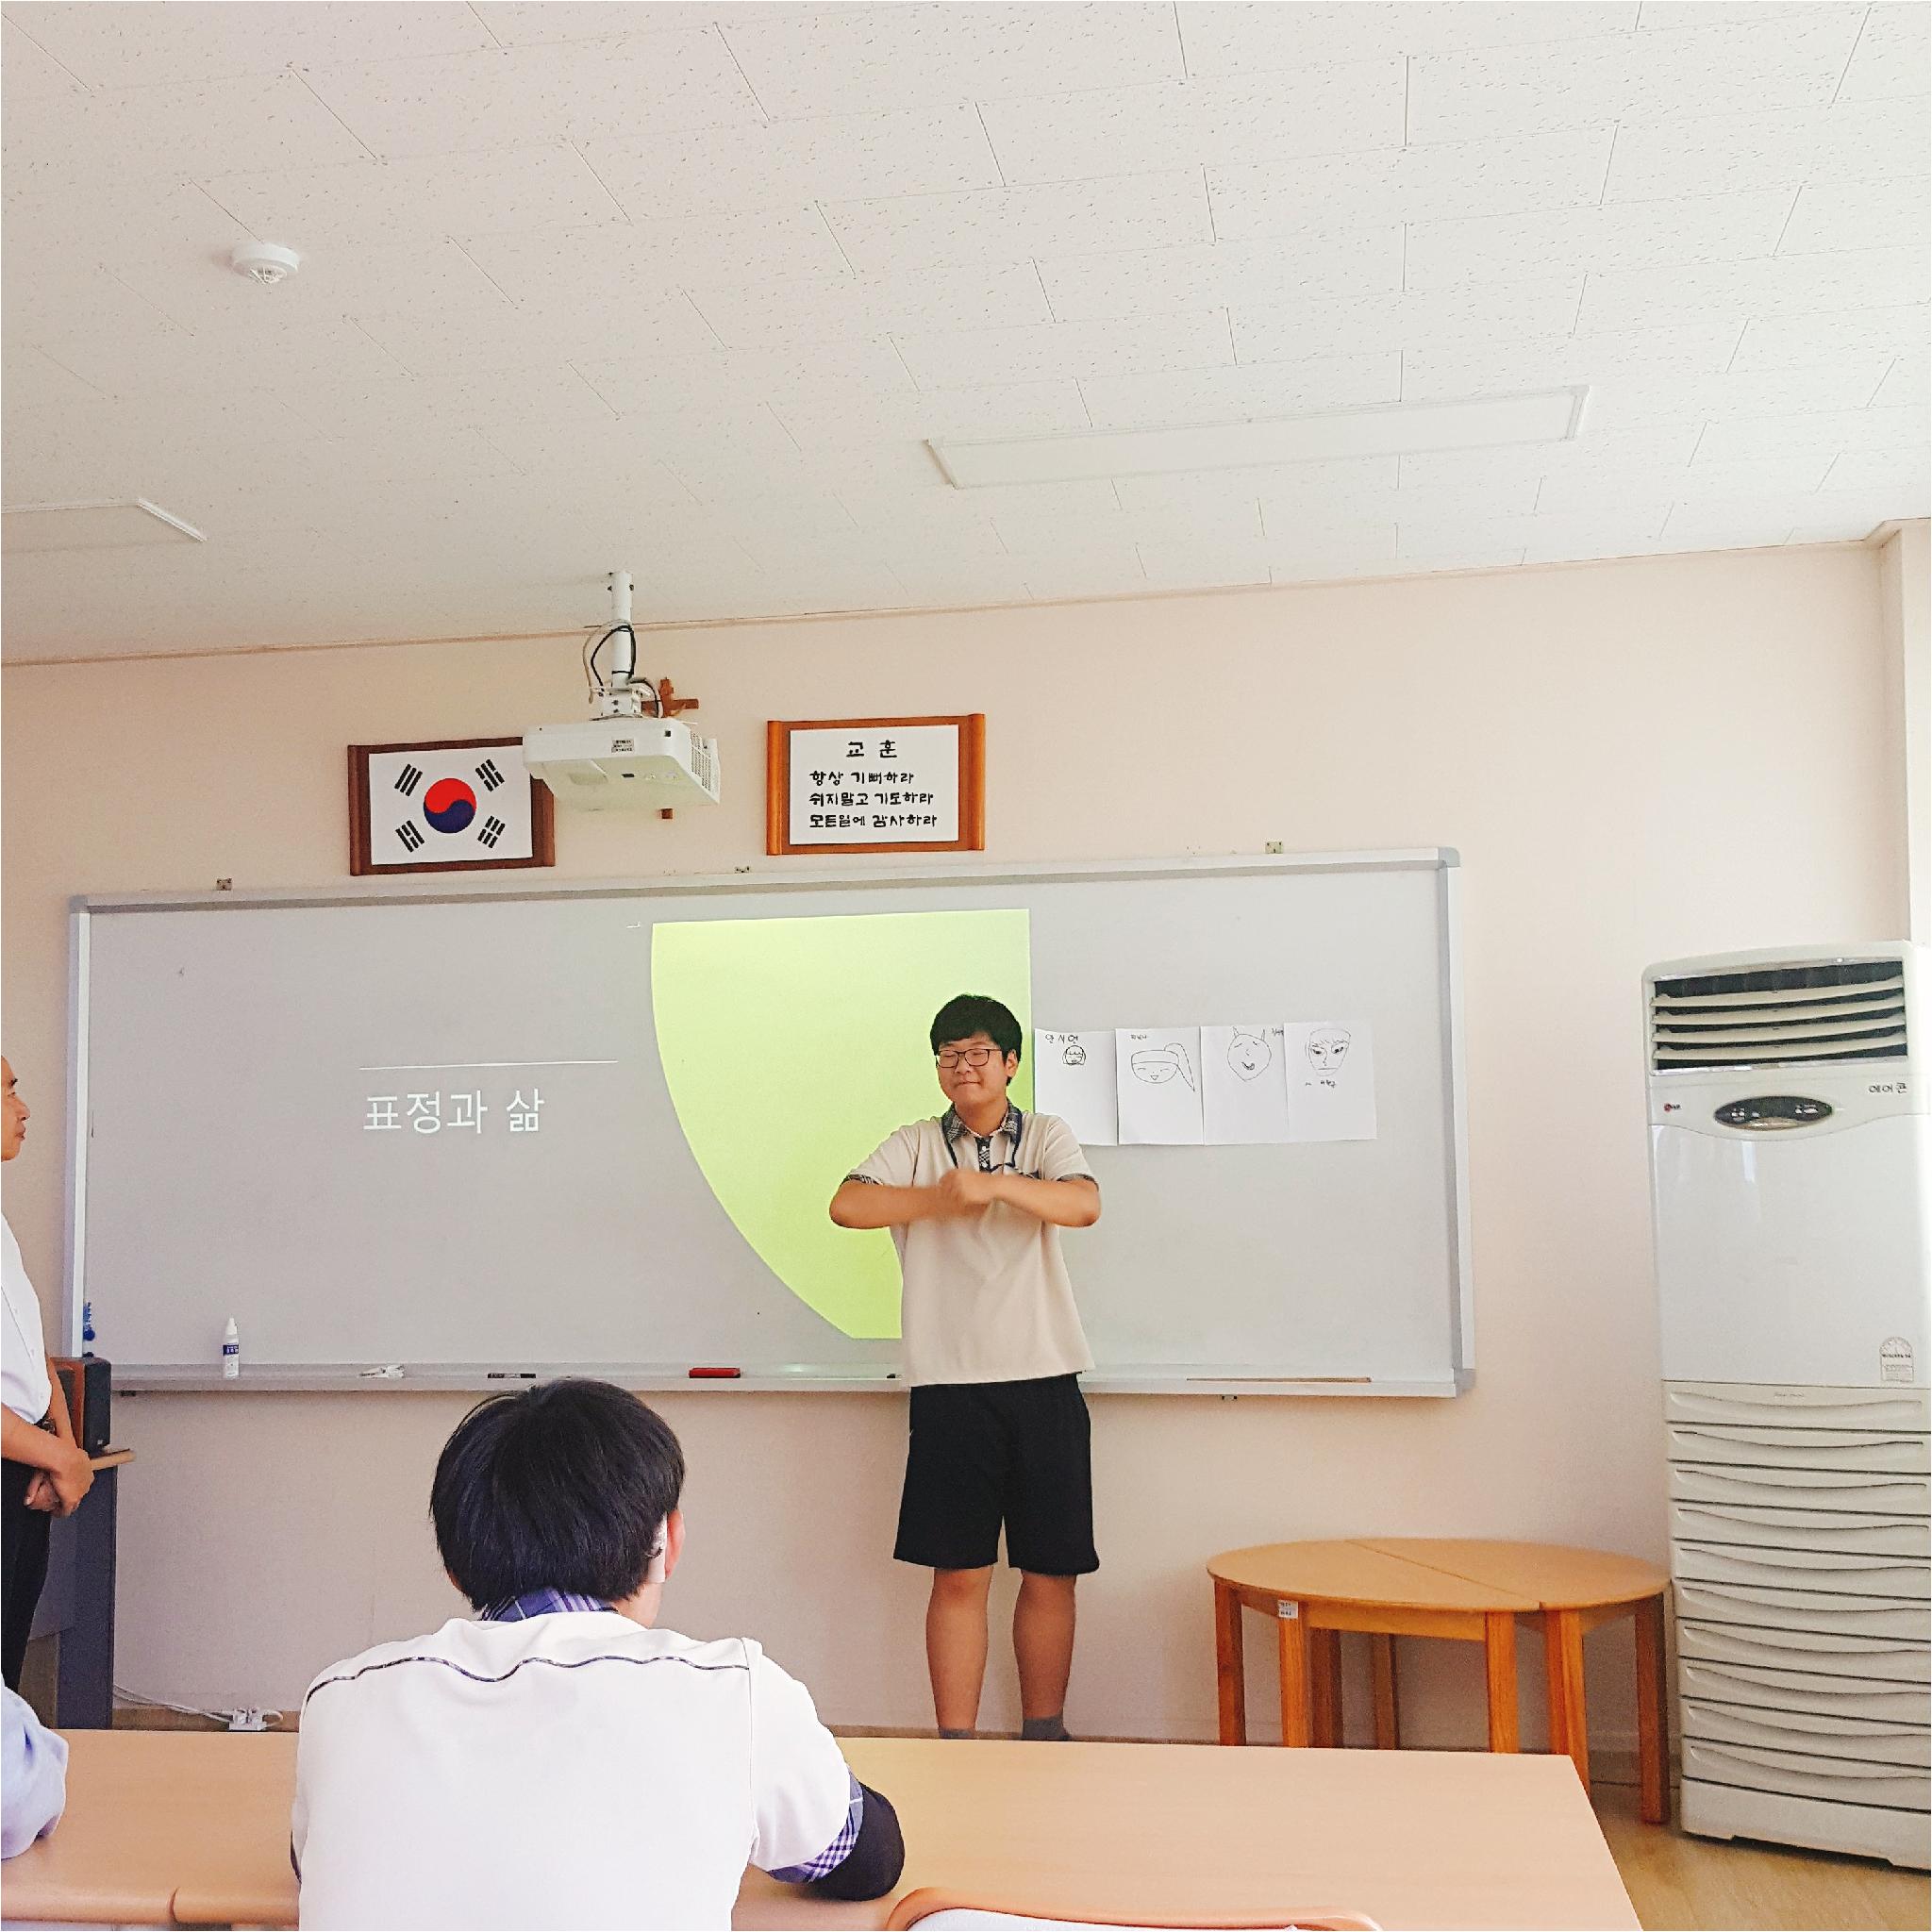 학생이 칠판 앞에 서서 발표를 하고 있는 사진